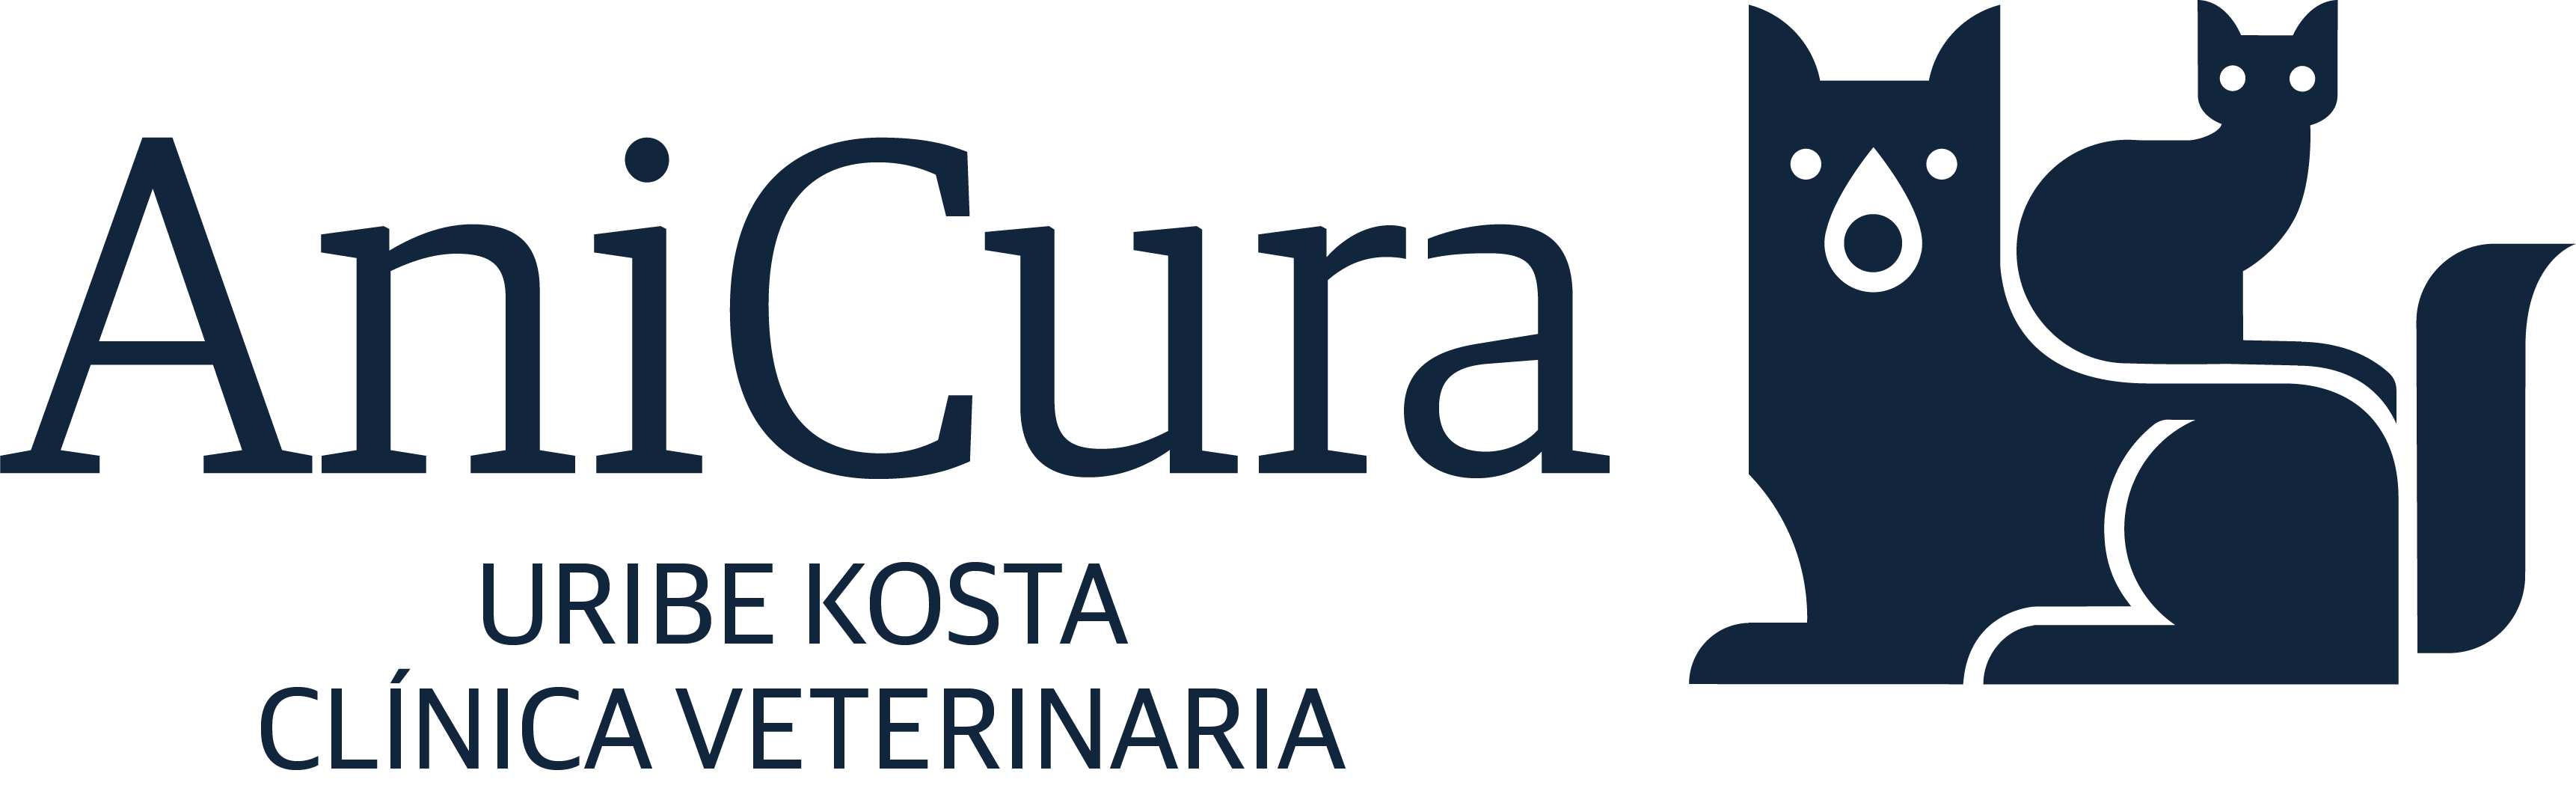 AniCura Uribe Kosta Clínica Veterinaria logo